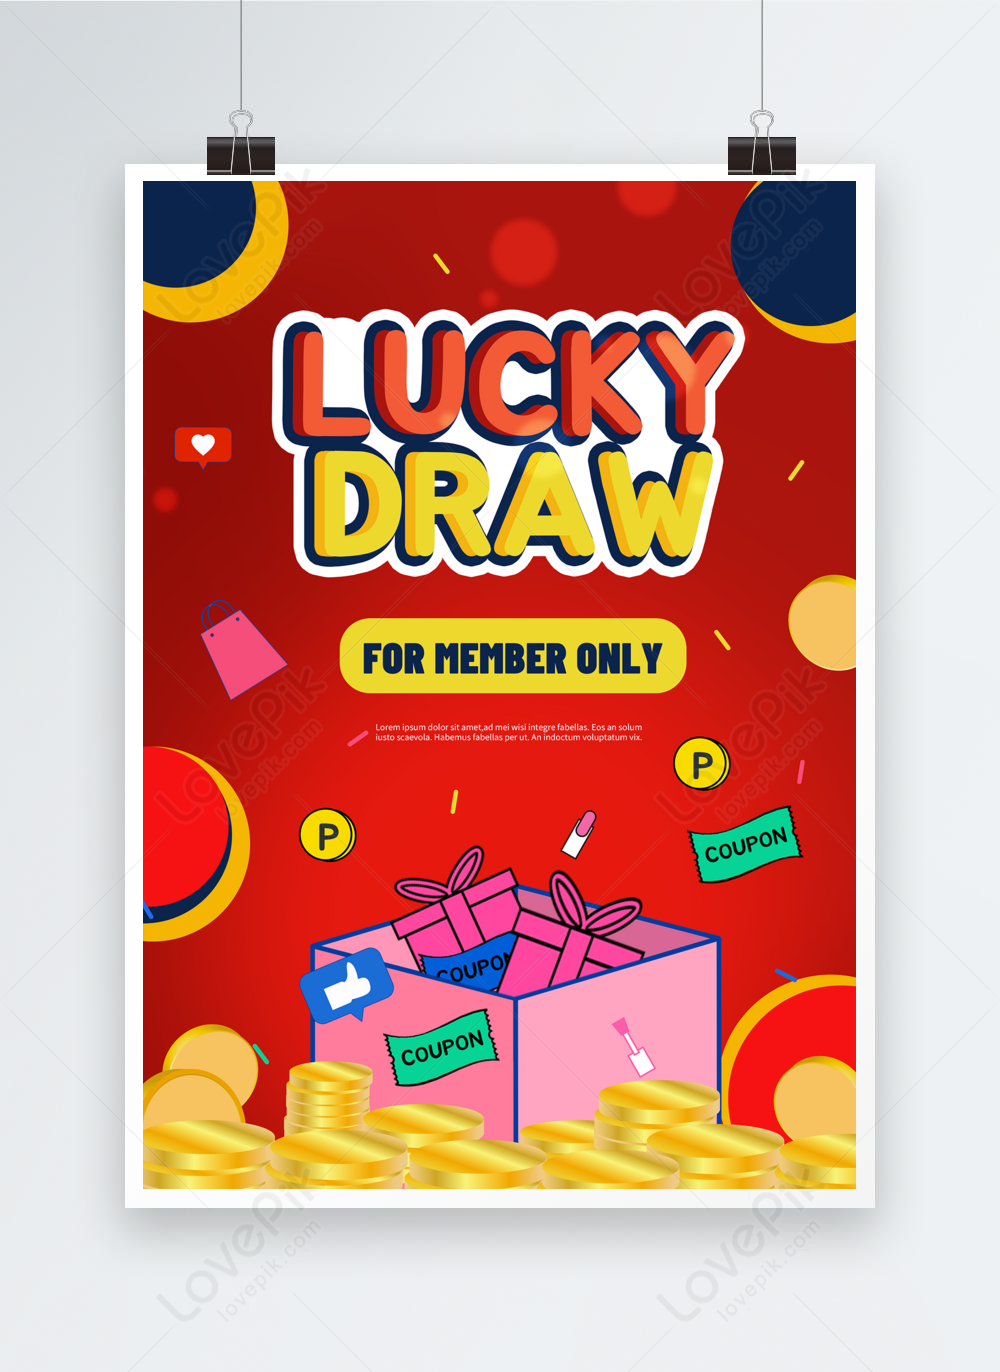 GiftCards2You - GC2U on LinkedIn: #gc2u #giftcards2you #giftcards #luckydraw  #contestalert #winbig #giveaway…